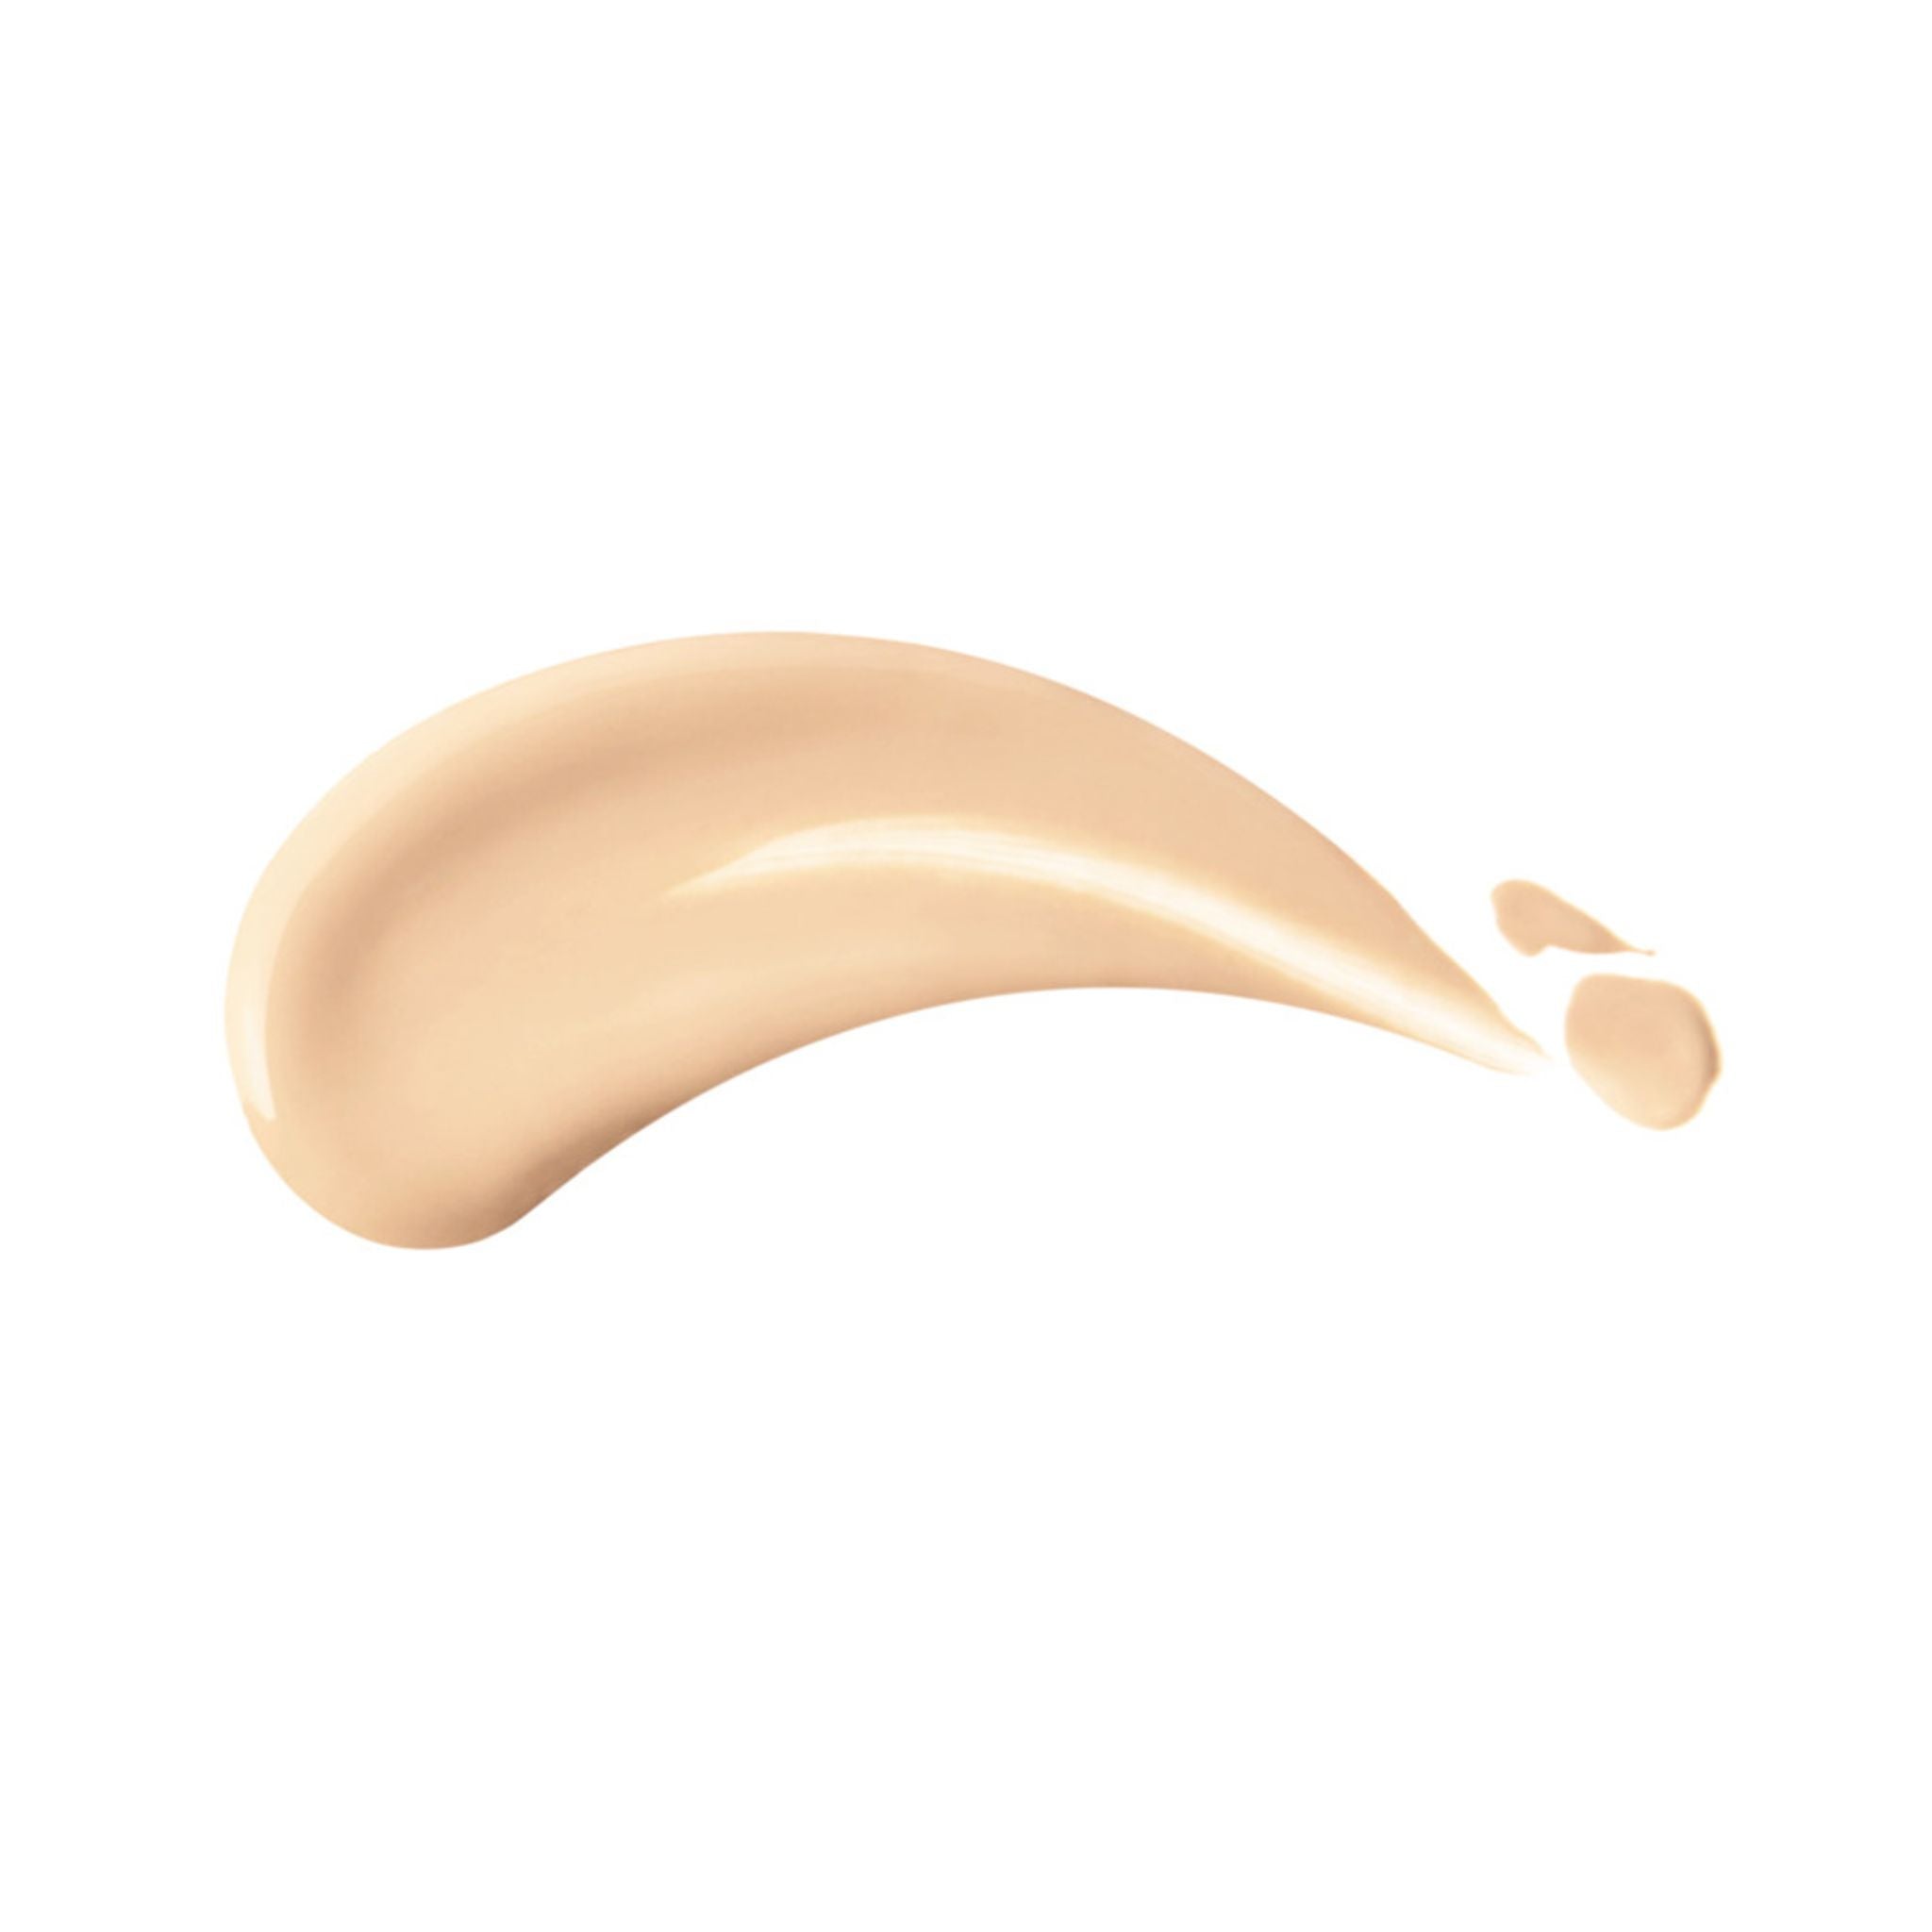 Shiseido Makeup RevitalEssence Skin Glow Foundation in 130 Opal (30ml)